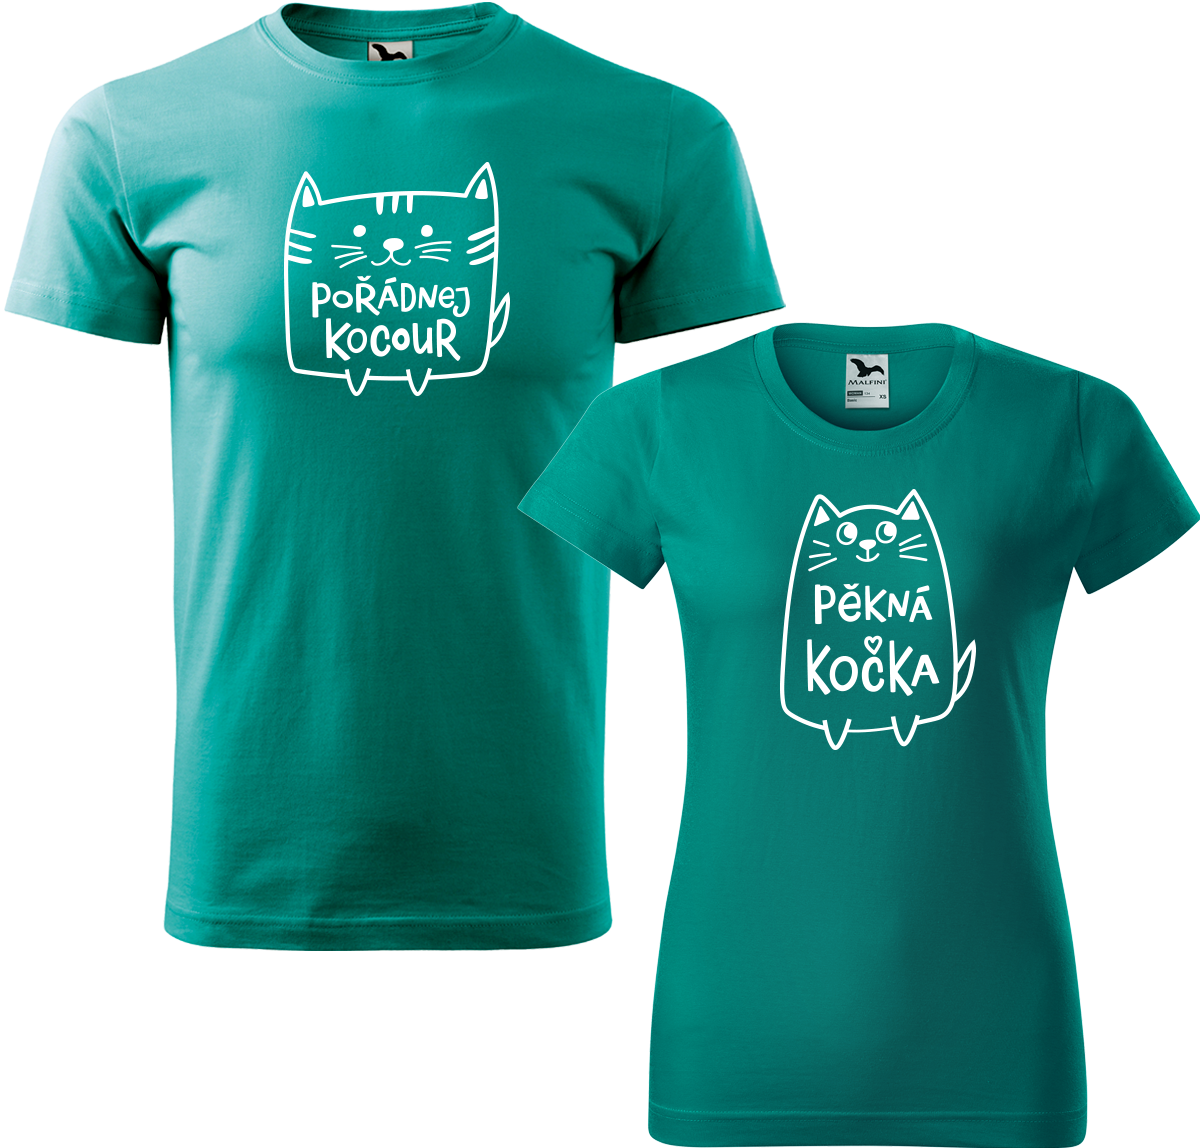 Trička pro páry - Pořádnej kocour a pěkná kočka Barva: Emerald (19), Velikost dámské tričko: M, Velikost pánské tričko: M